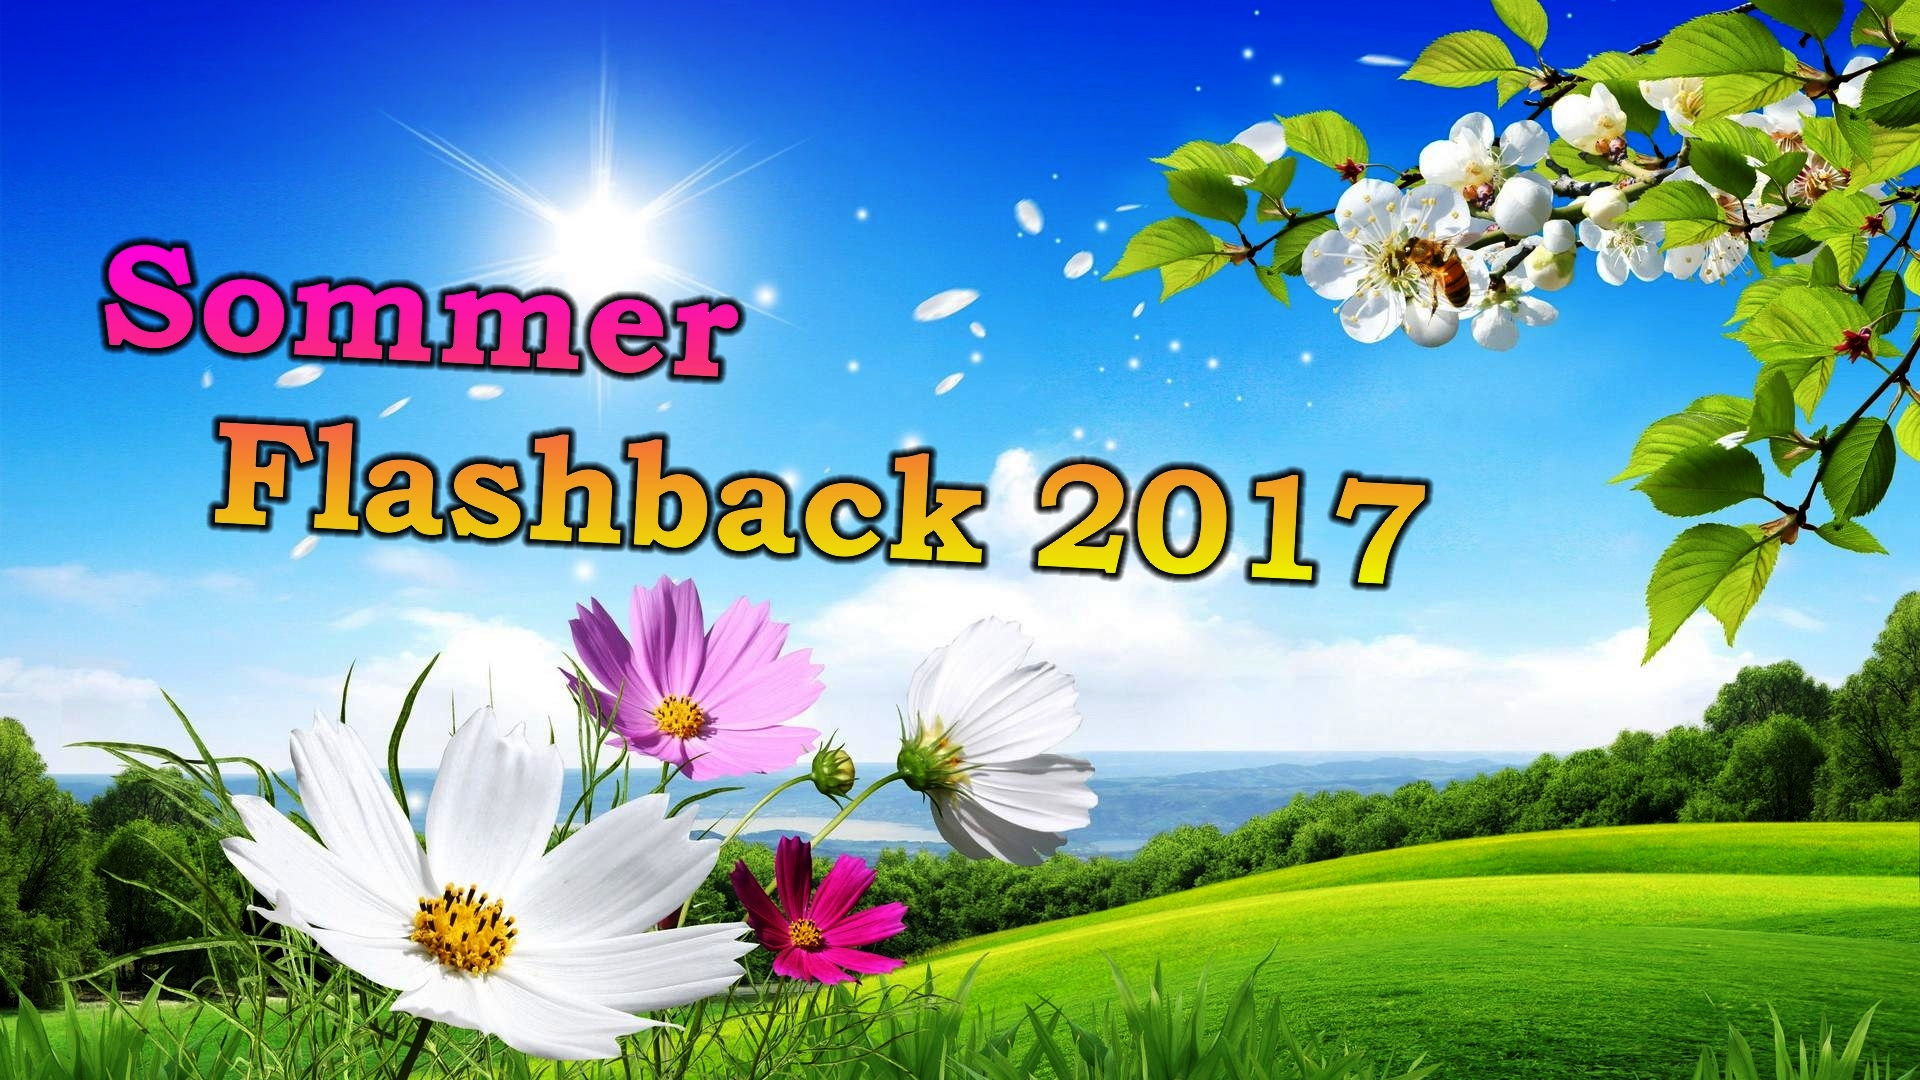 Sommer Flashback 2021 in Mix DJ Shorty 44.Neu